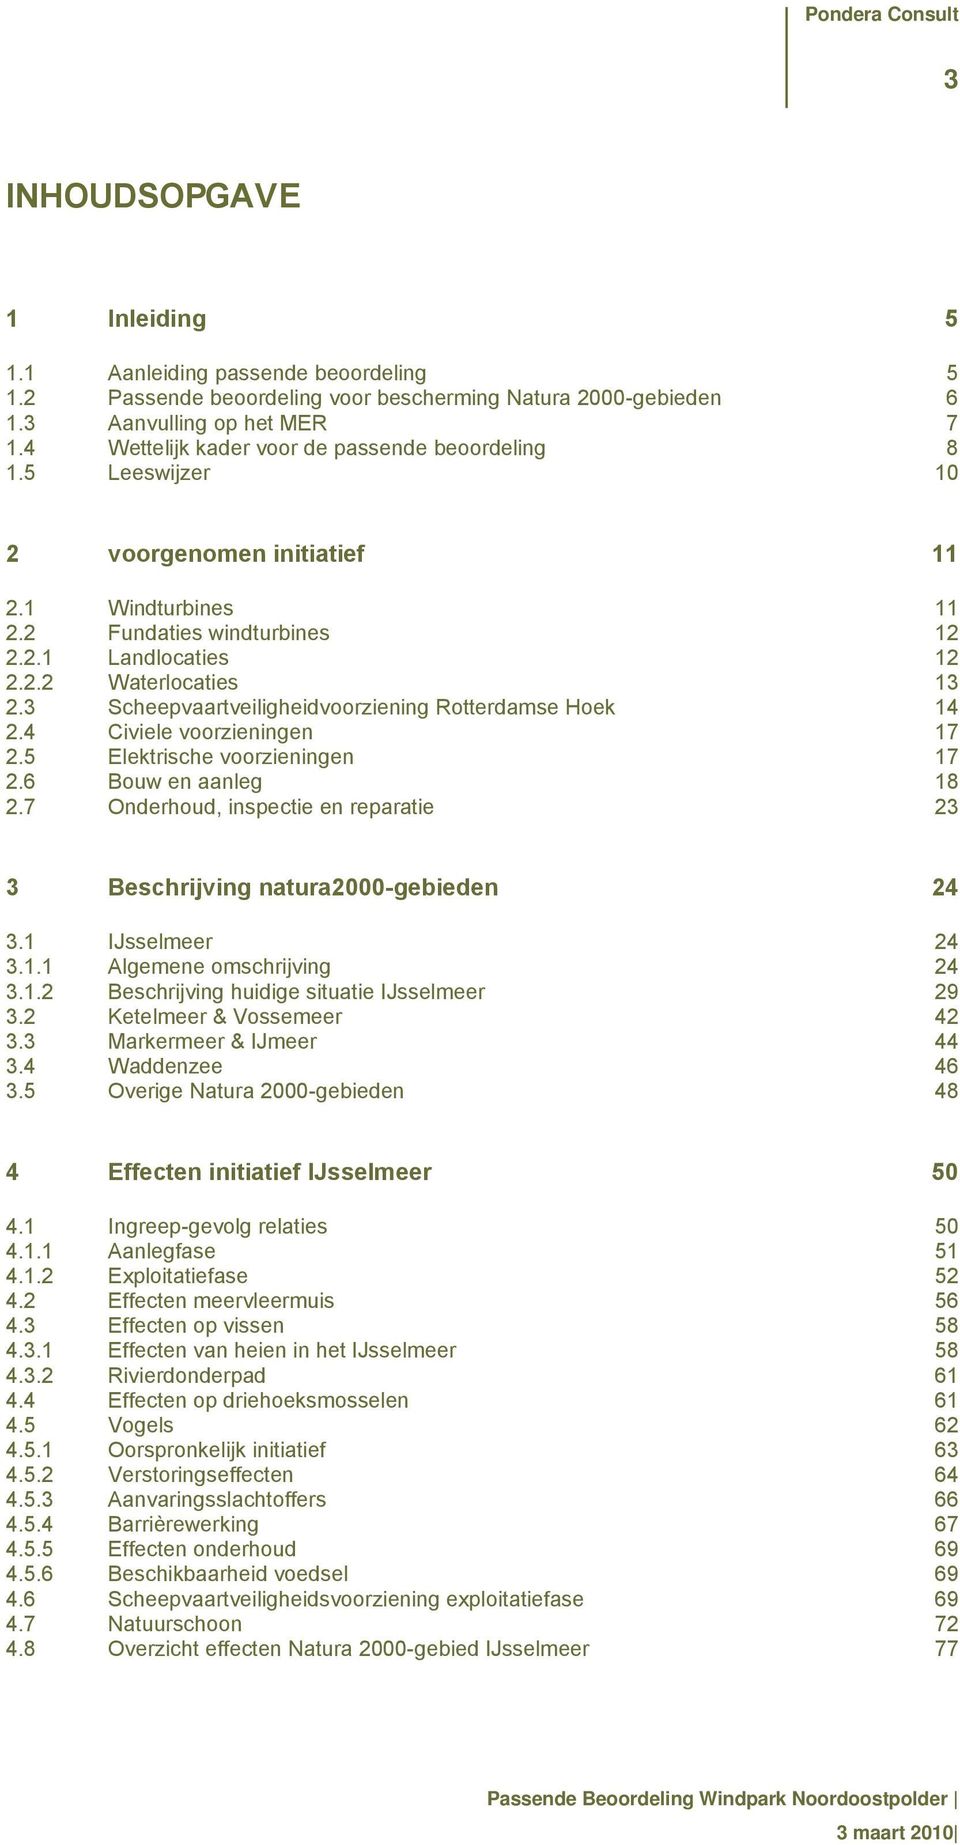 3 Scheepvaartveiligheidvoorziening Rotterdamse Hoek 14 2.4 Civiele voorzieningen 17 2.5 Elektrische voorzieningen 17 2.6 Bouw en aanleg 18 2.